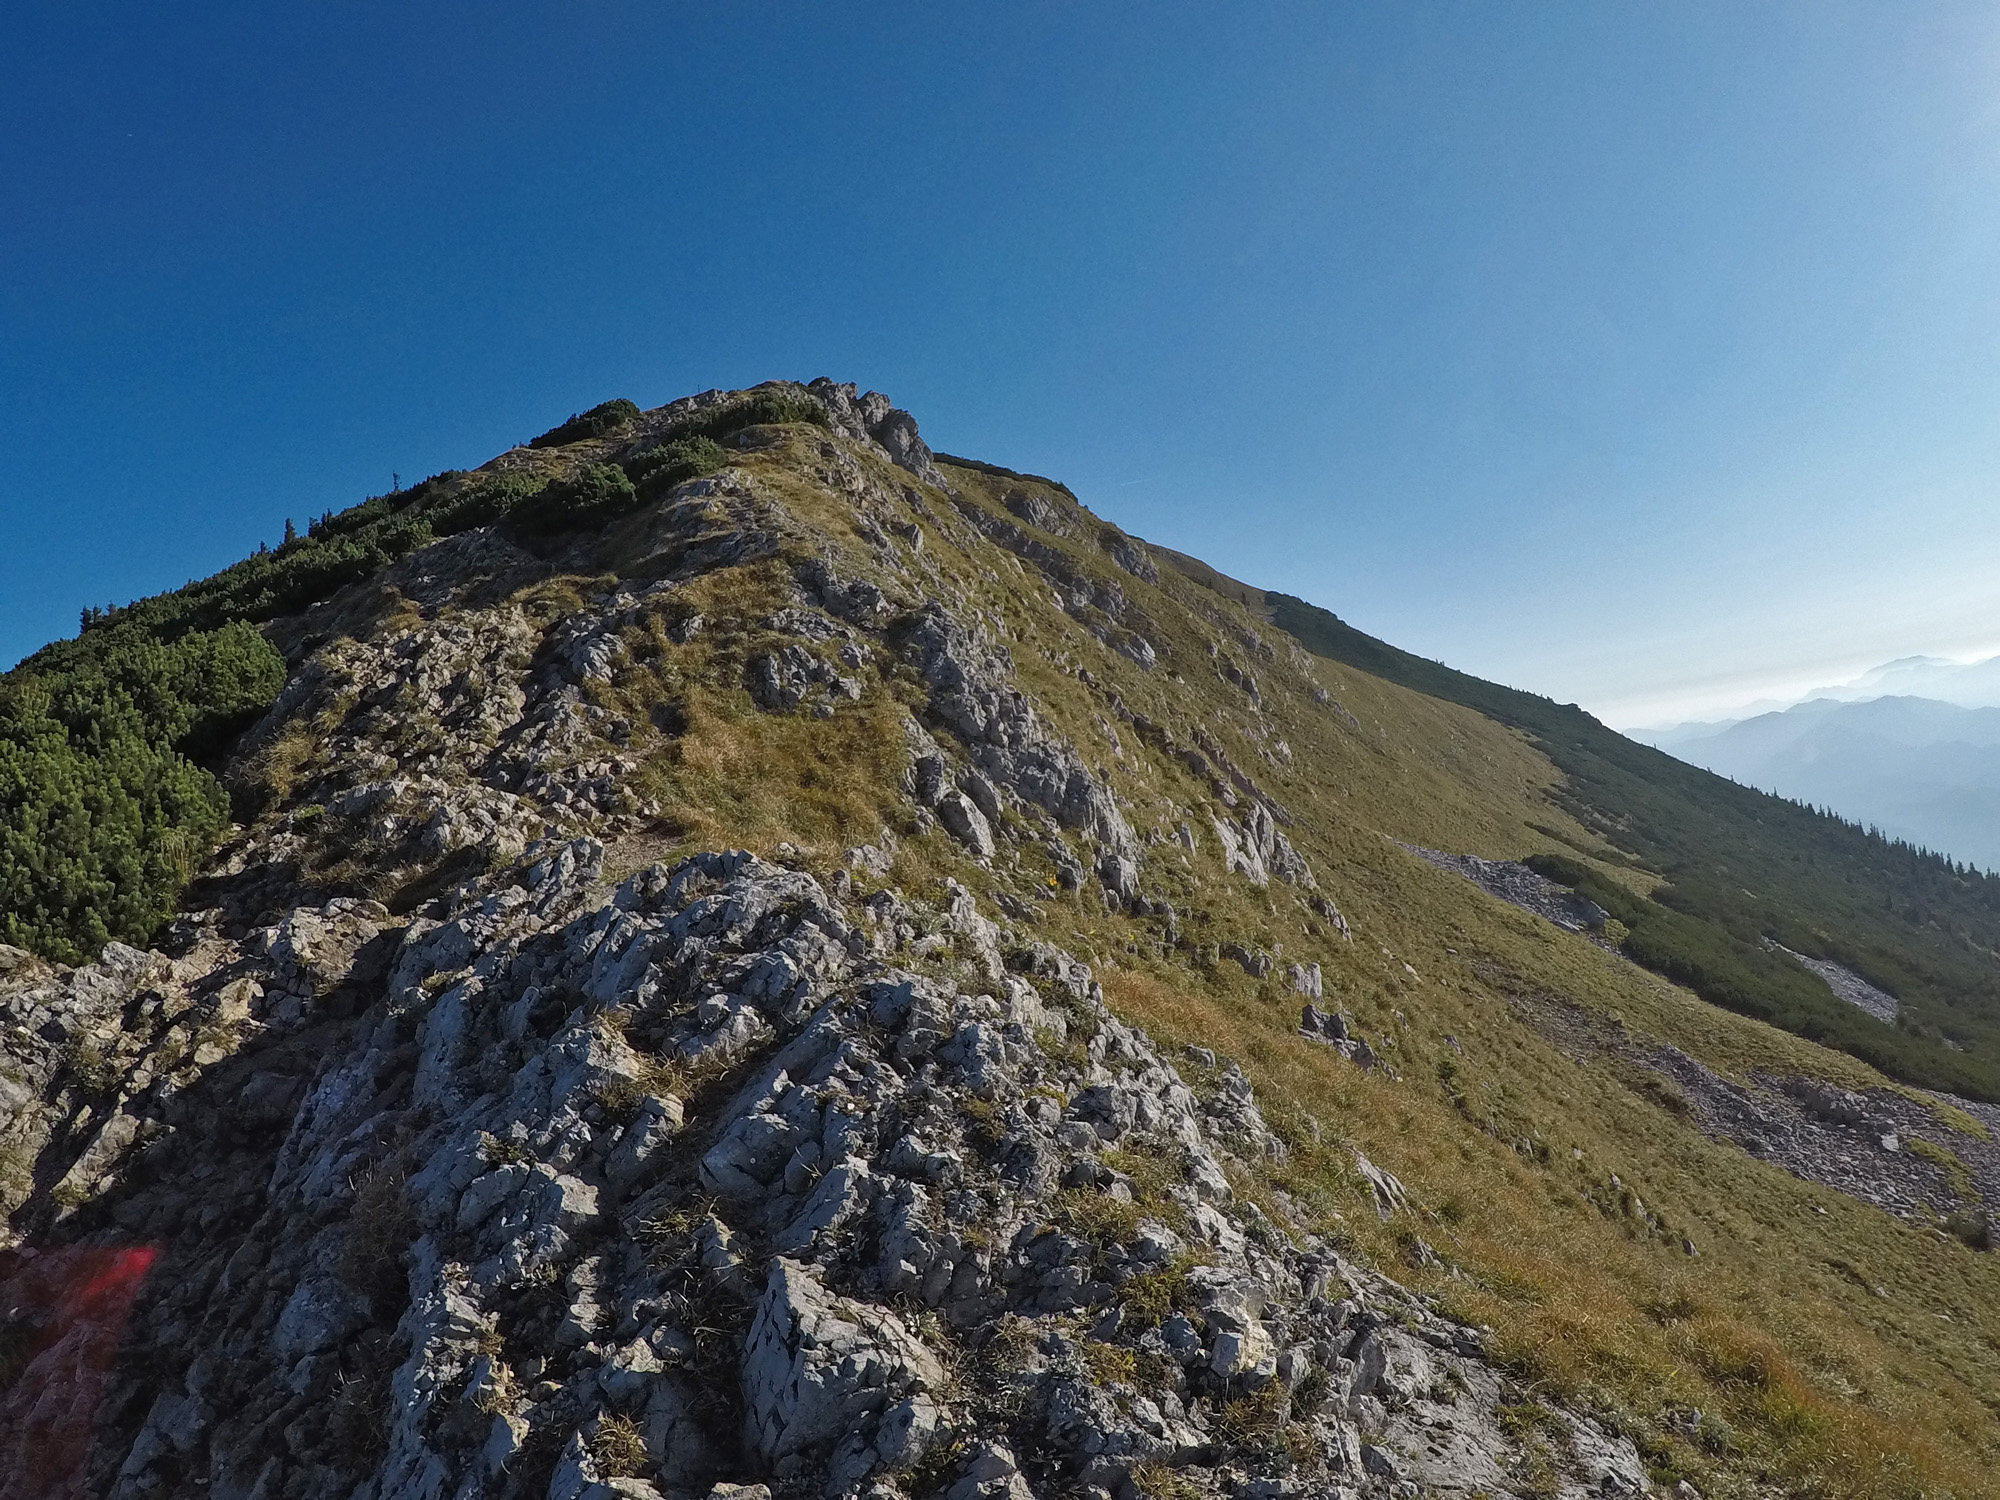 Cesta na Ötscher vedie cez skalnatý úsek, ktorý je pomerne prudký a zrána šmykľavý